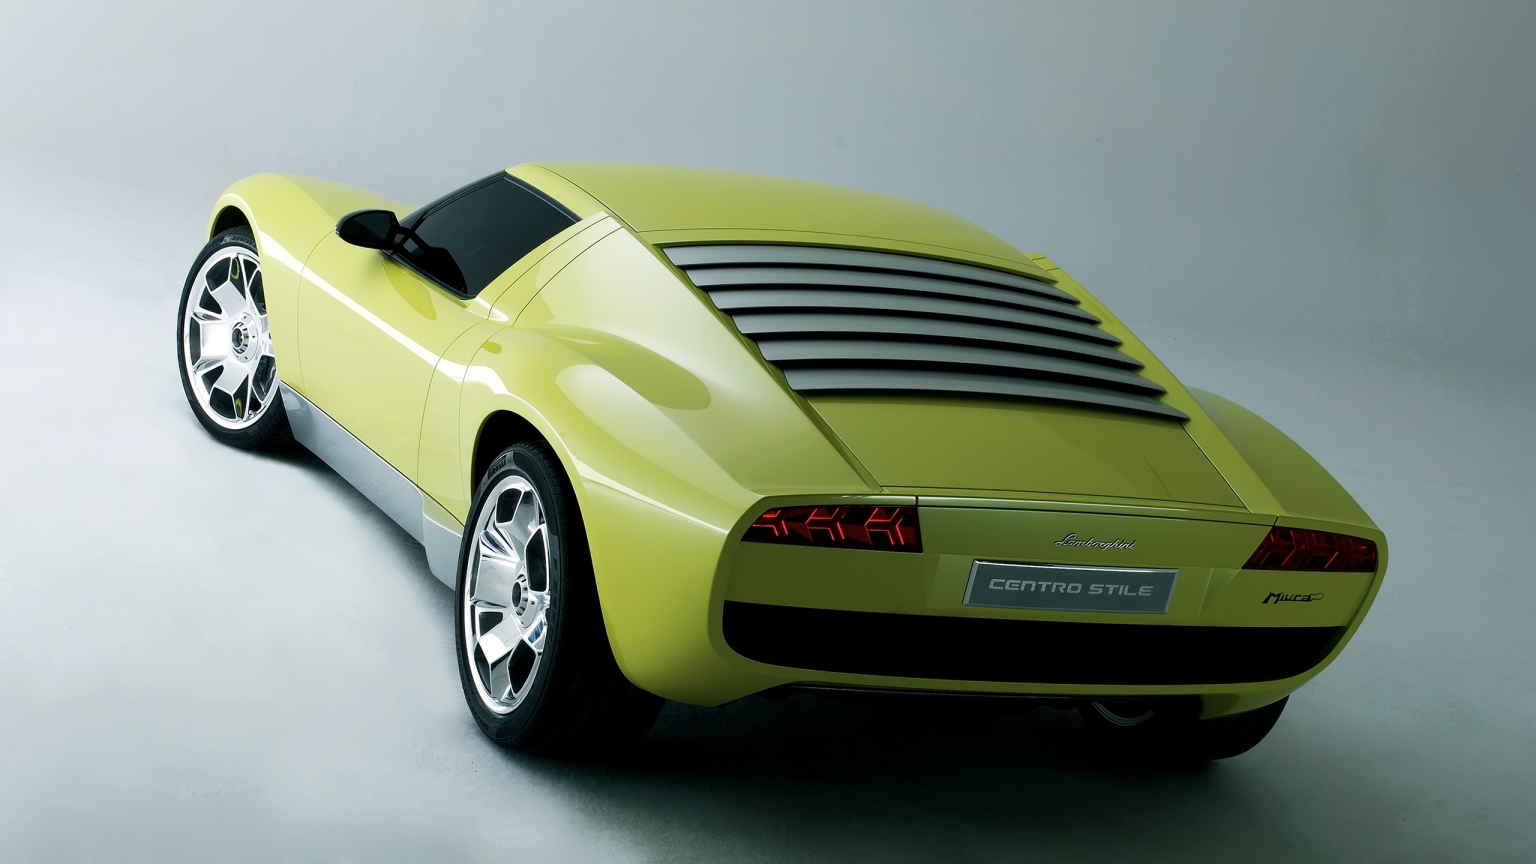 Lamborghini Miura Concept Rear for 1536 x 864 HDTV resolution